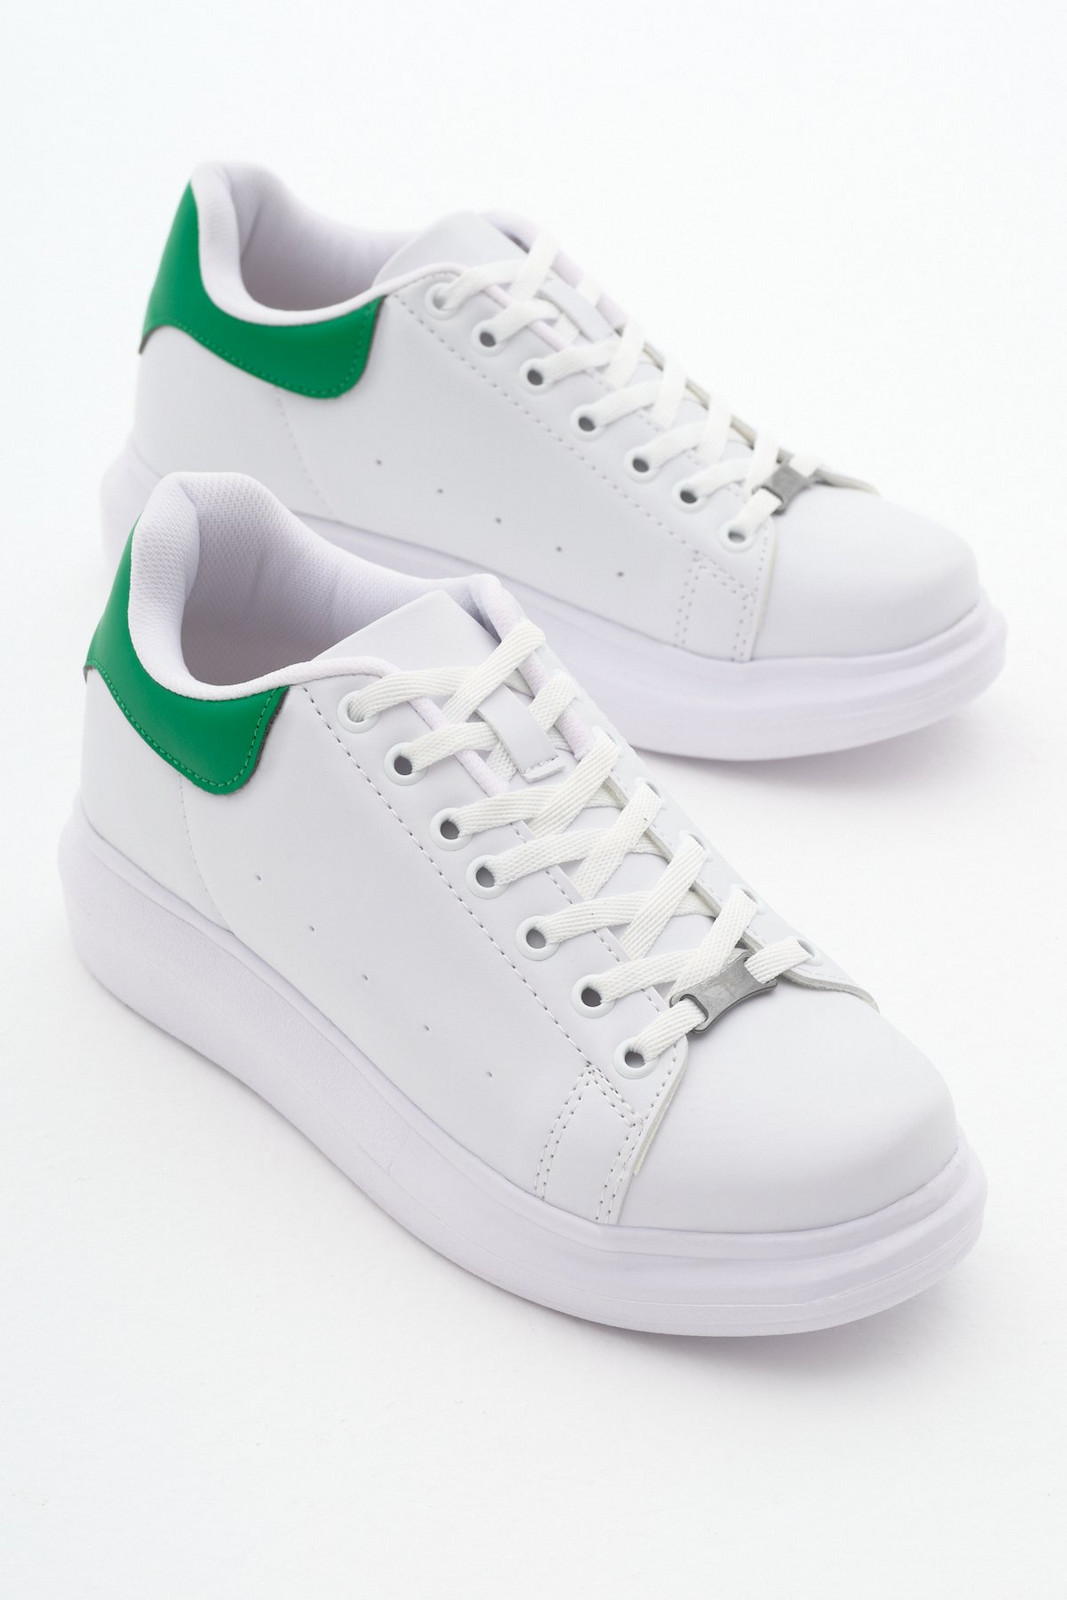 Tonny Black Unisex White Green Sneakers V2alx